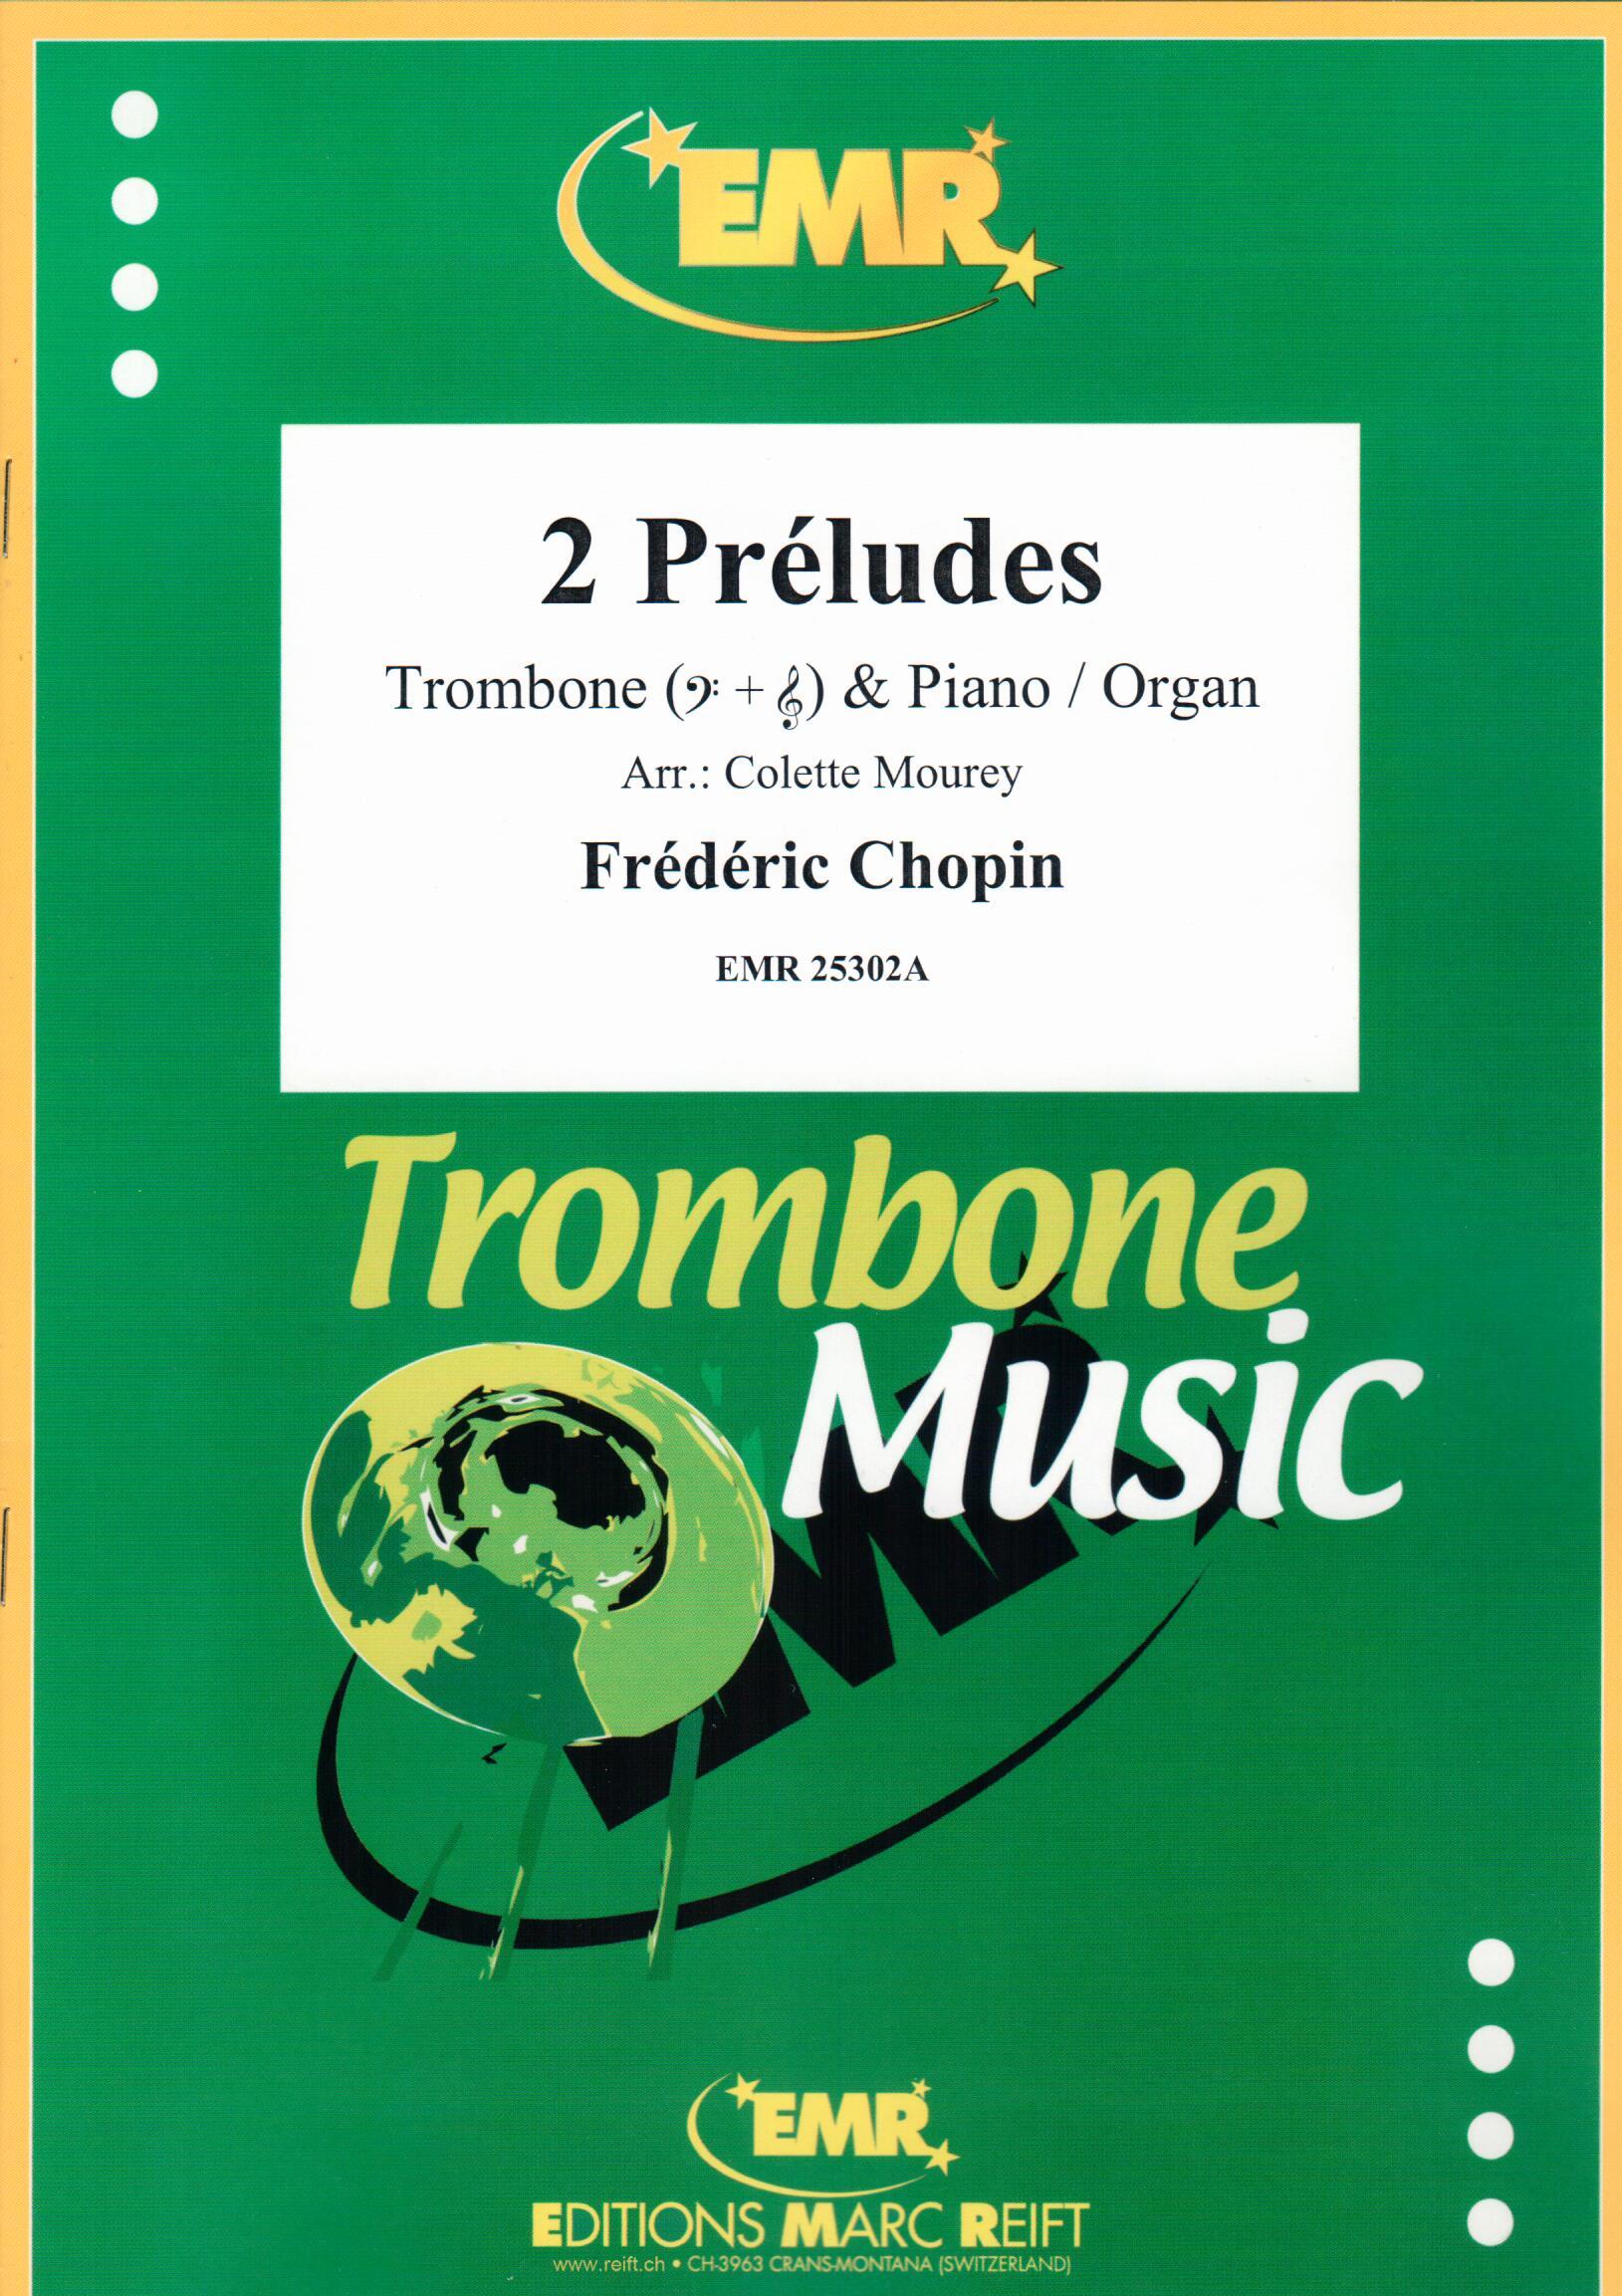 2 PRéLUDES, SOLOS - Trombone